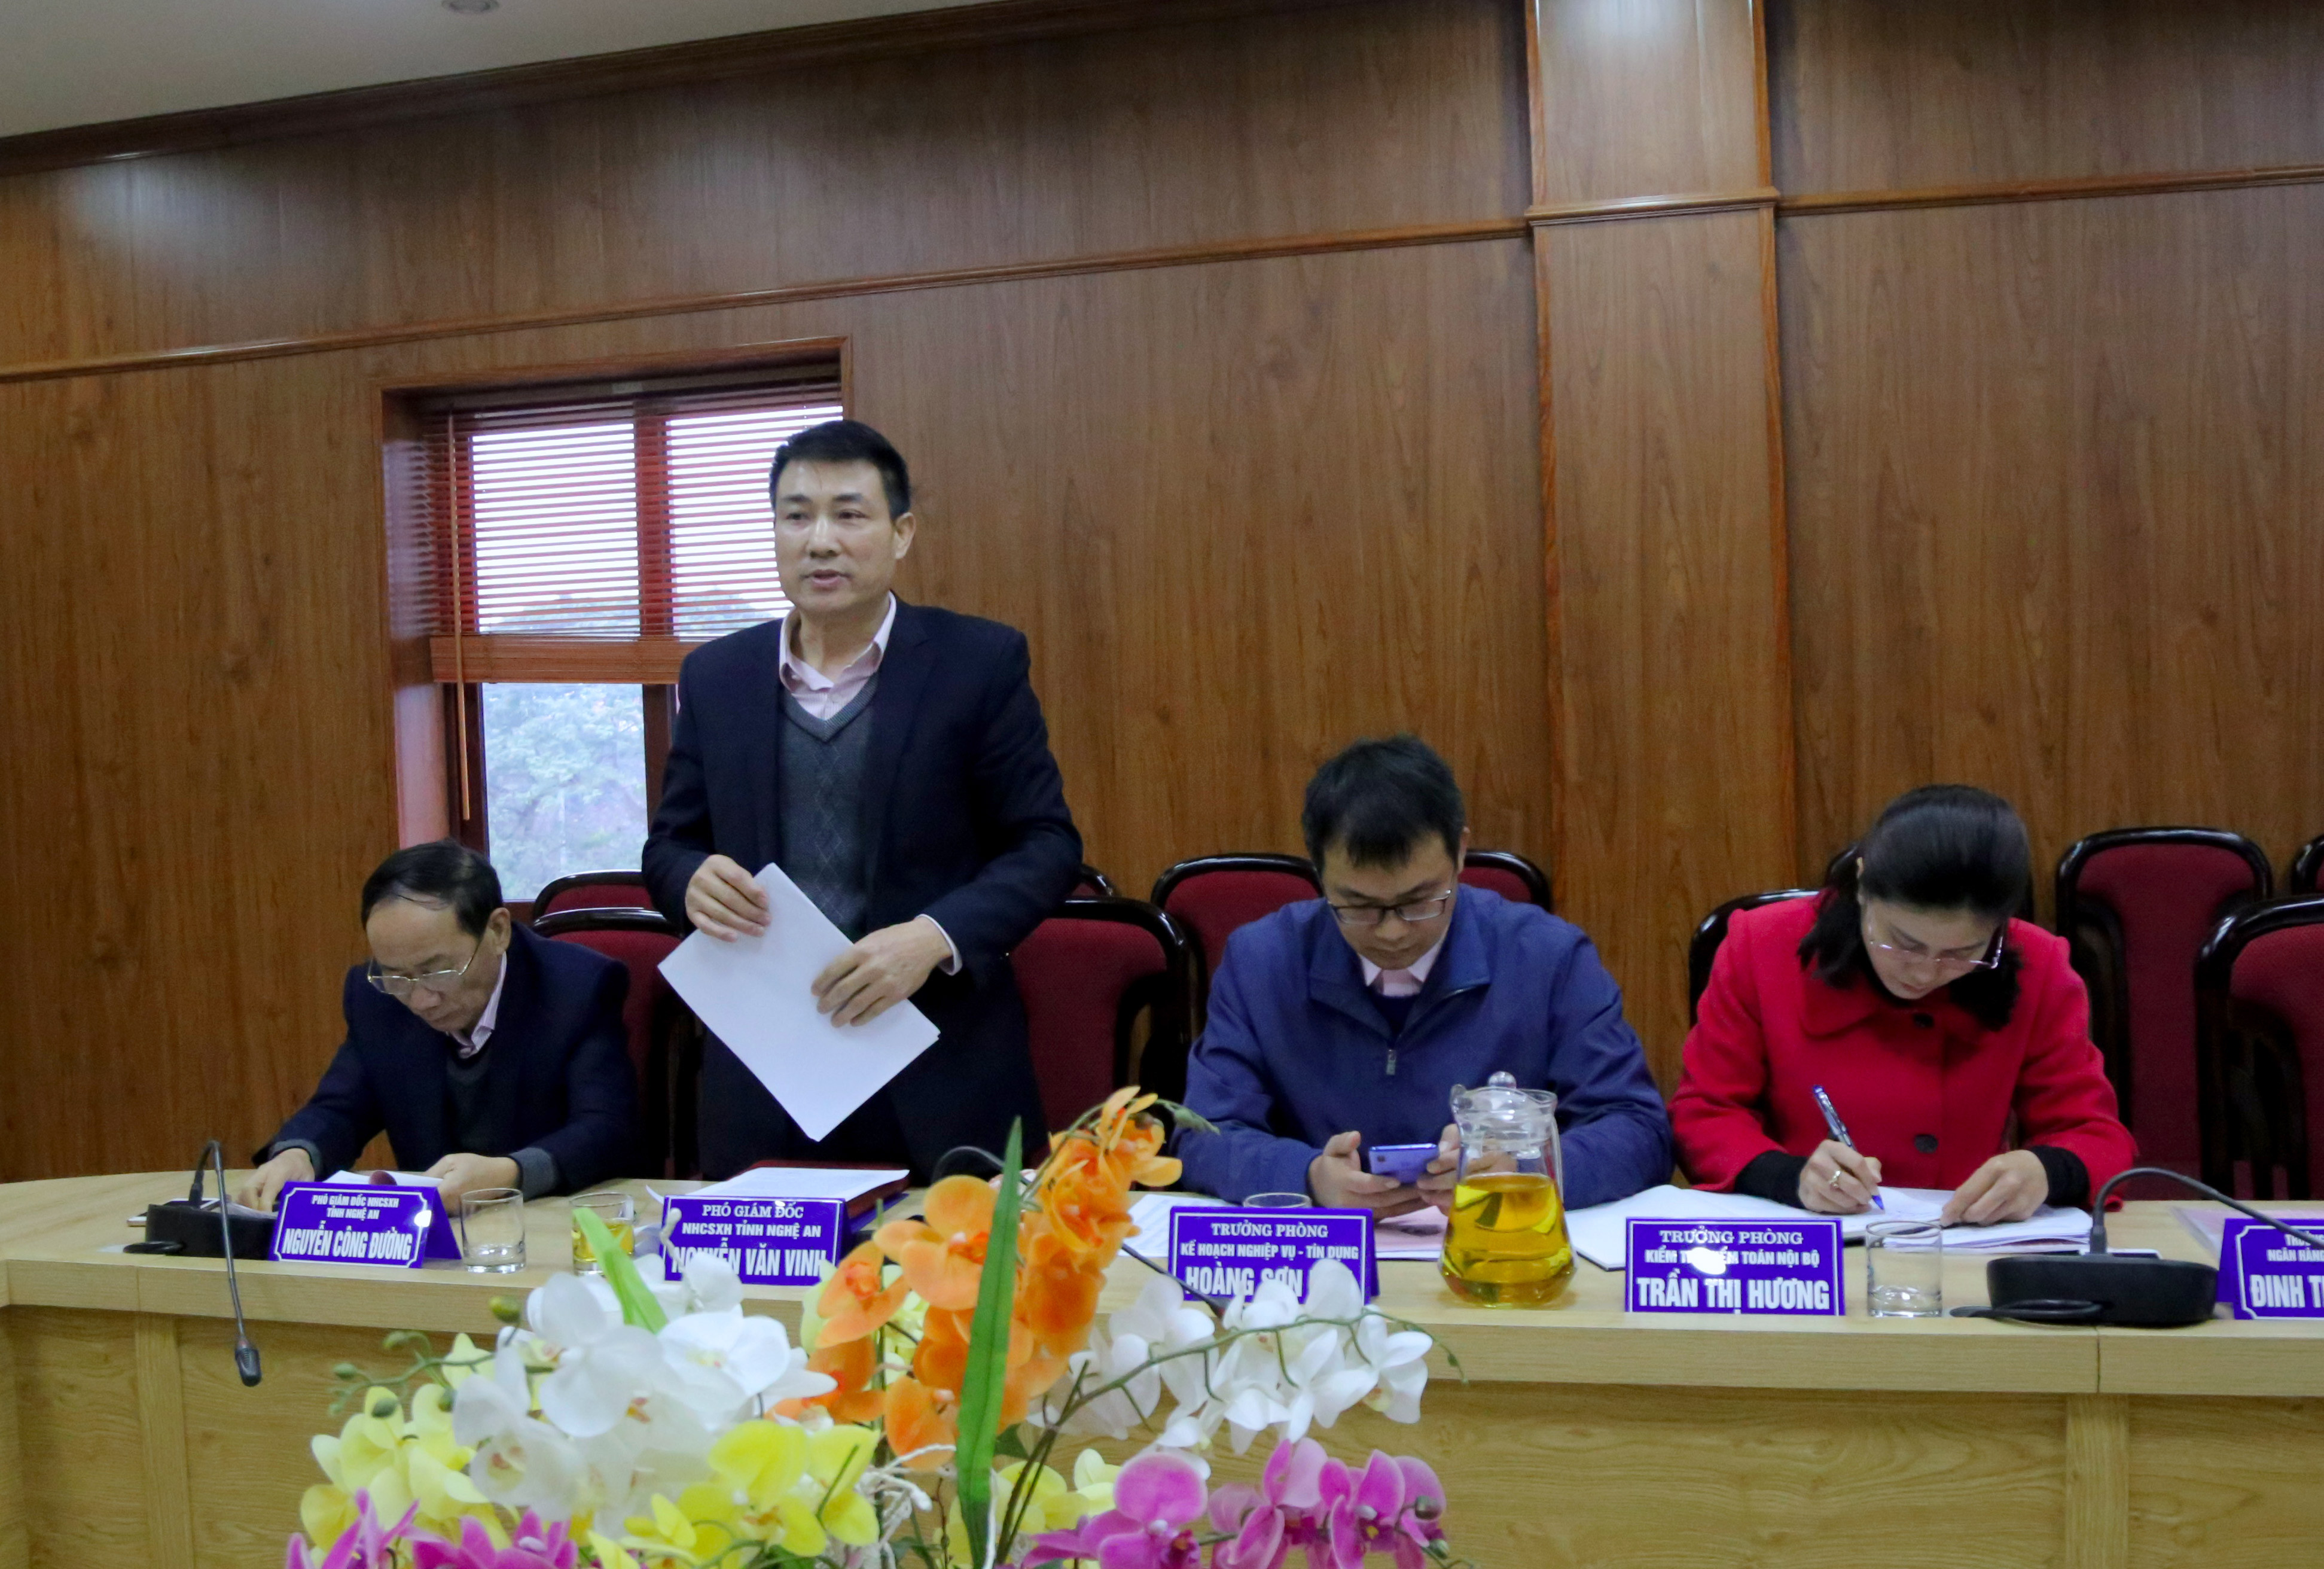 Phó giám đốc NHCSXH tỉnh Nguyễn Văn Vinh trình bày báo cáo kết quả hoạt động năm 2020, triển khai nhiệm vụ năm 2021. Ảnh Thu Huyền